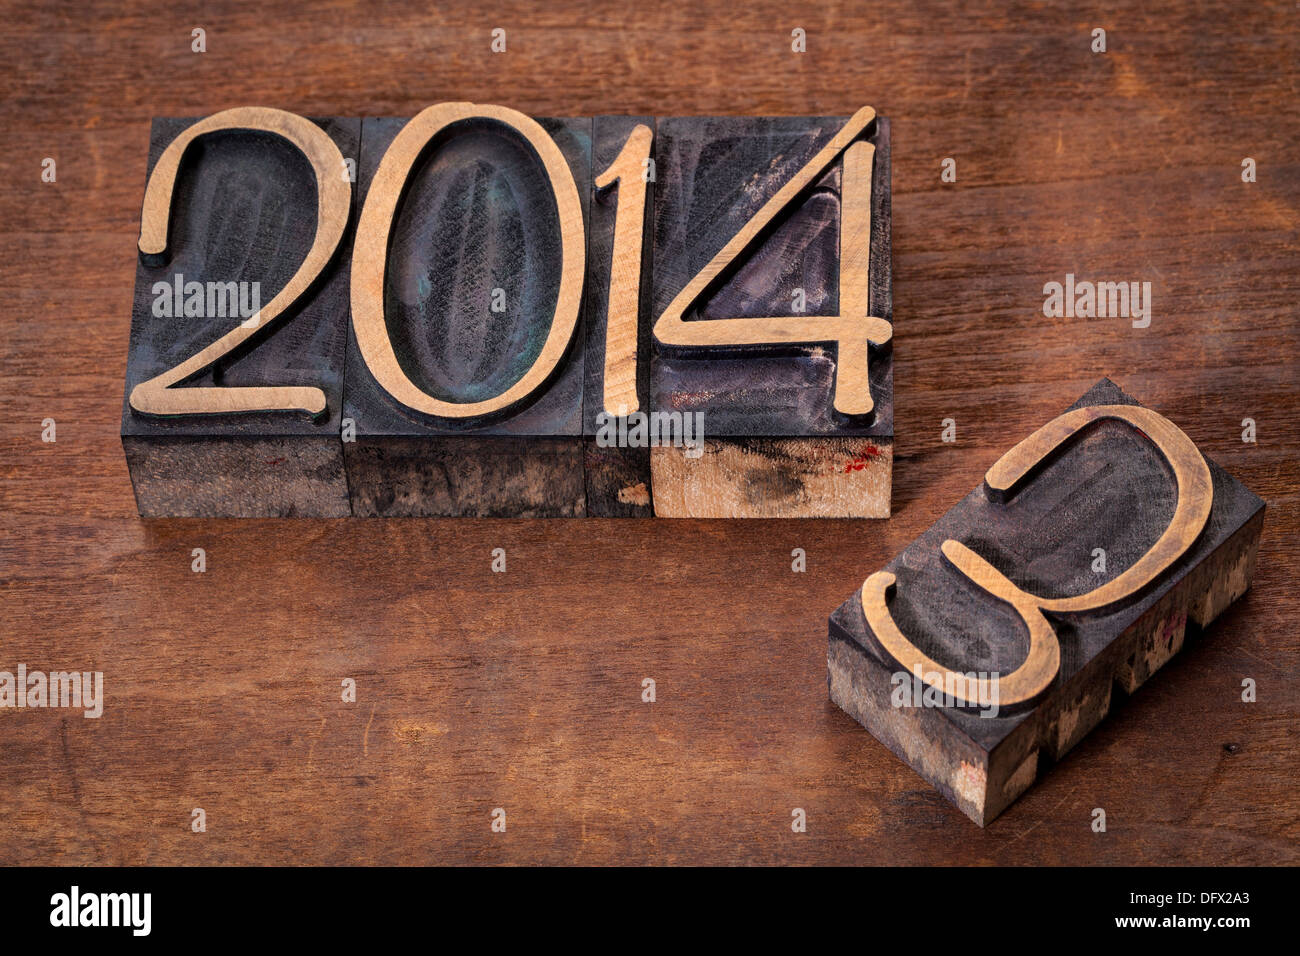 Nuovo anno 2014 la sostituzione del vecchio anno 2013 - stampa tipografica tipo di legno su un grunge superficie in legno Foto Stock